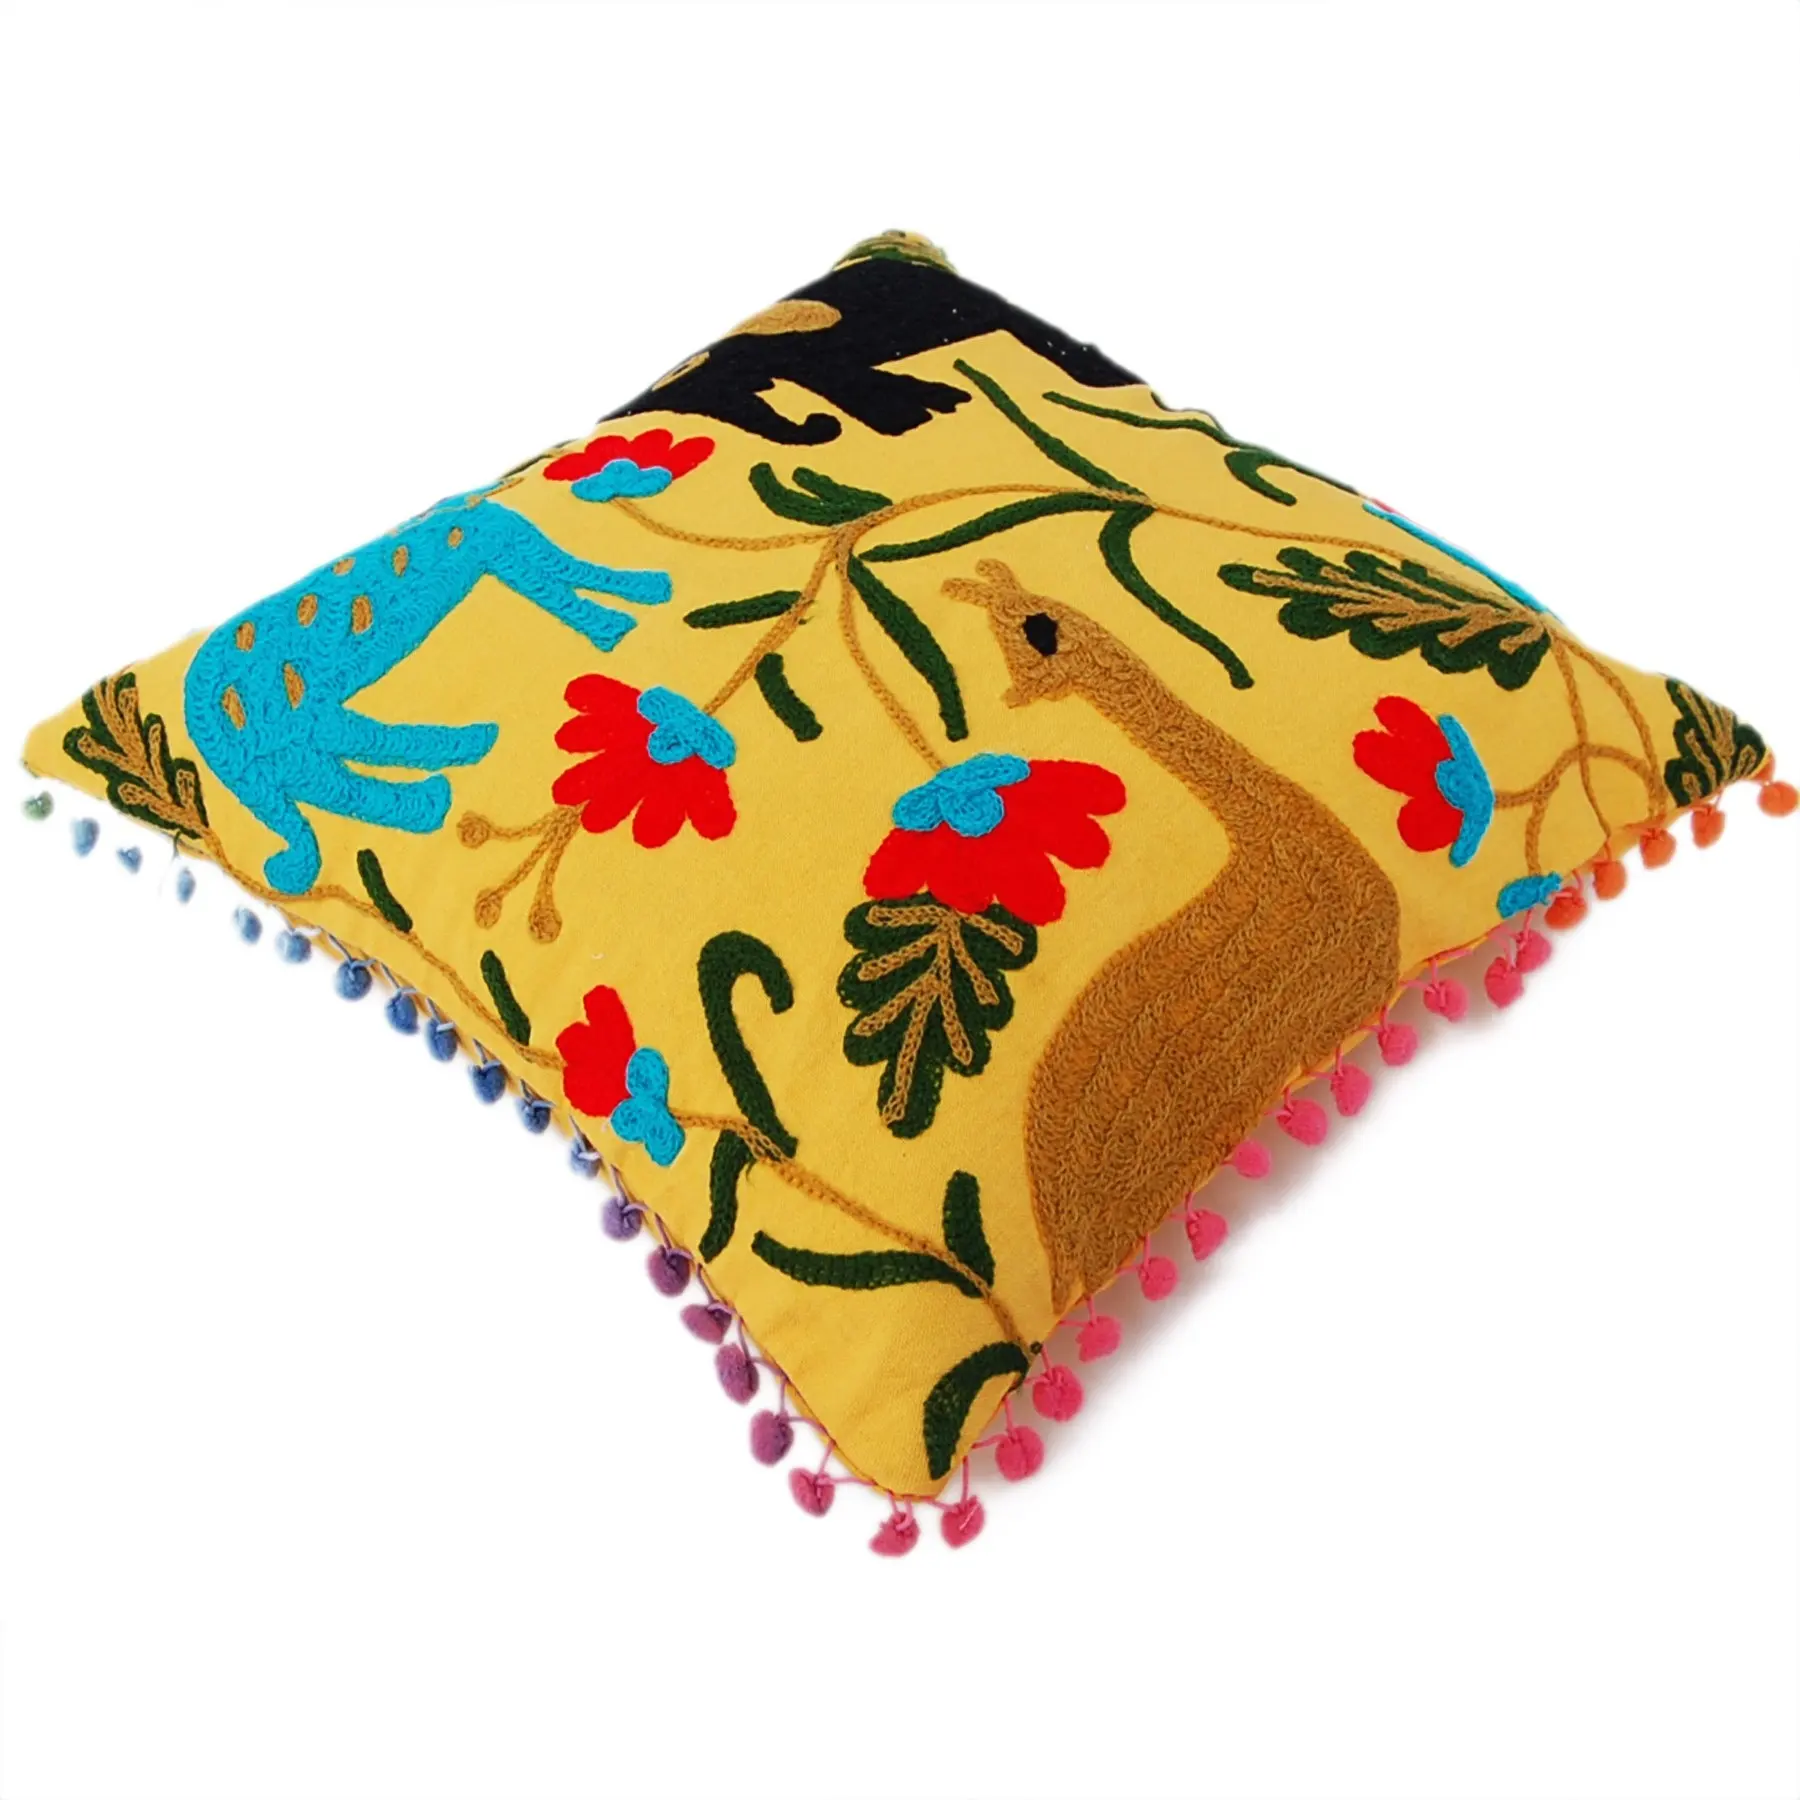 인도 침구 면 던지기 베개 케이스 수제 모직 수자니 자수 옐로우 스퀘어 트로피컬 쿠션 커버 도매